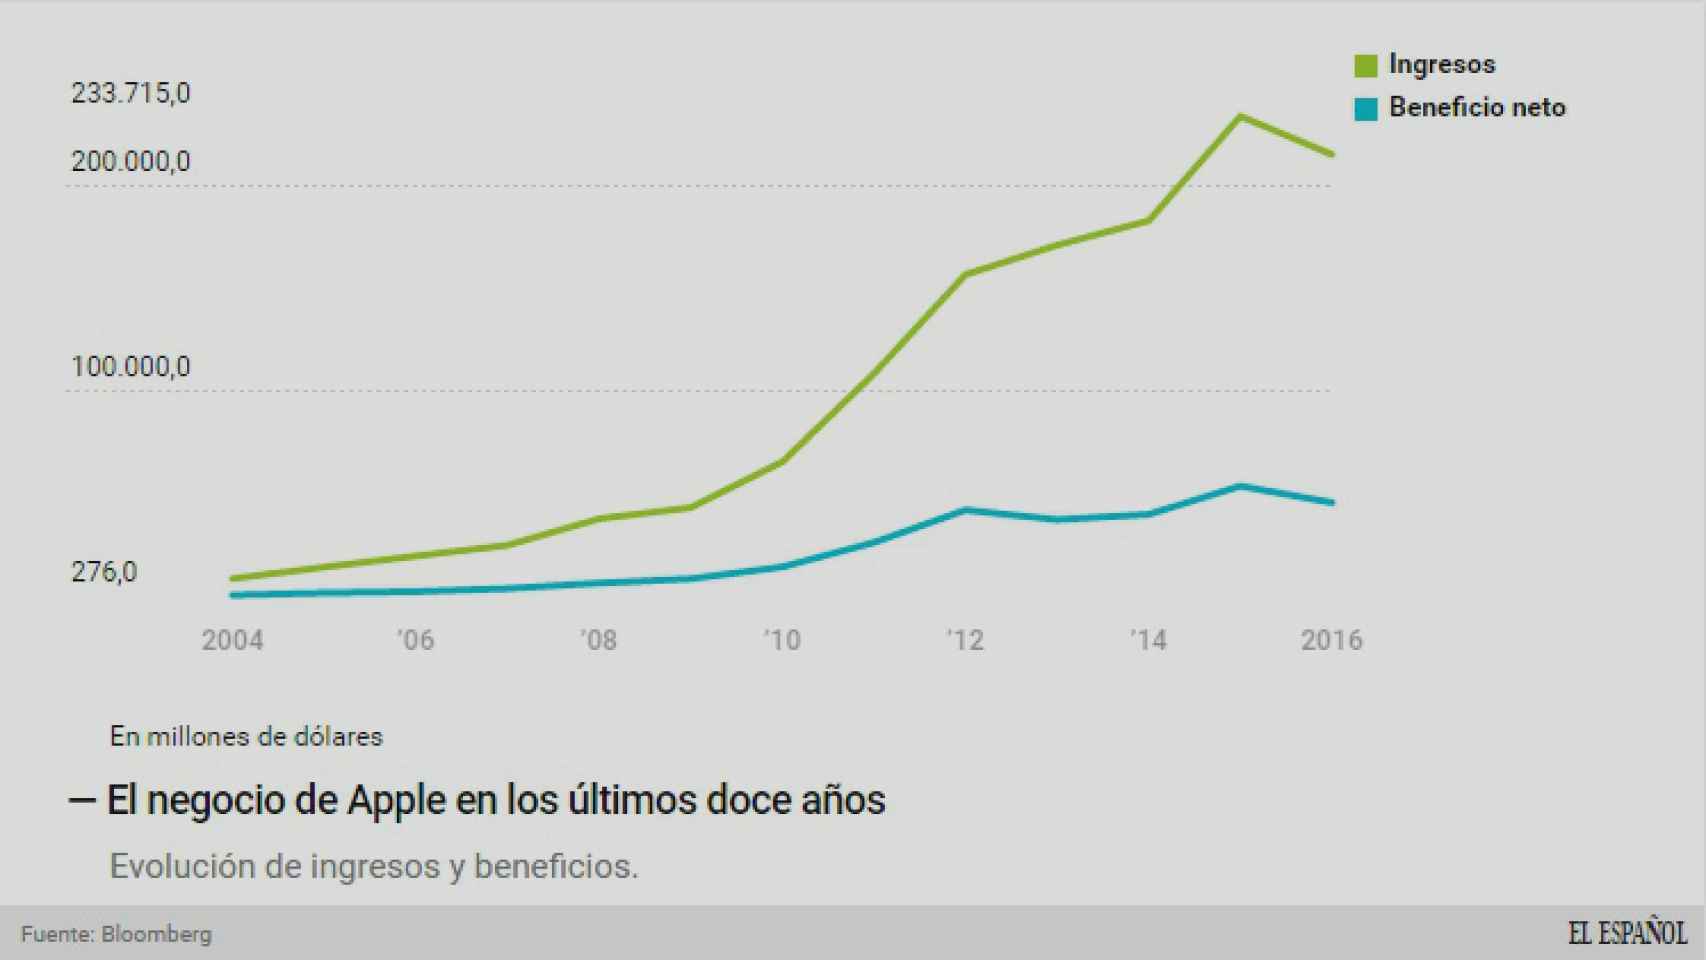 Evolución del negocio (ingresos y beneficios) de Apple.